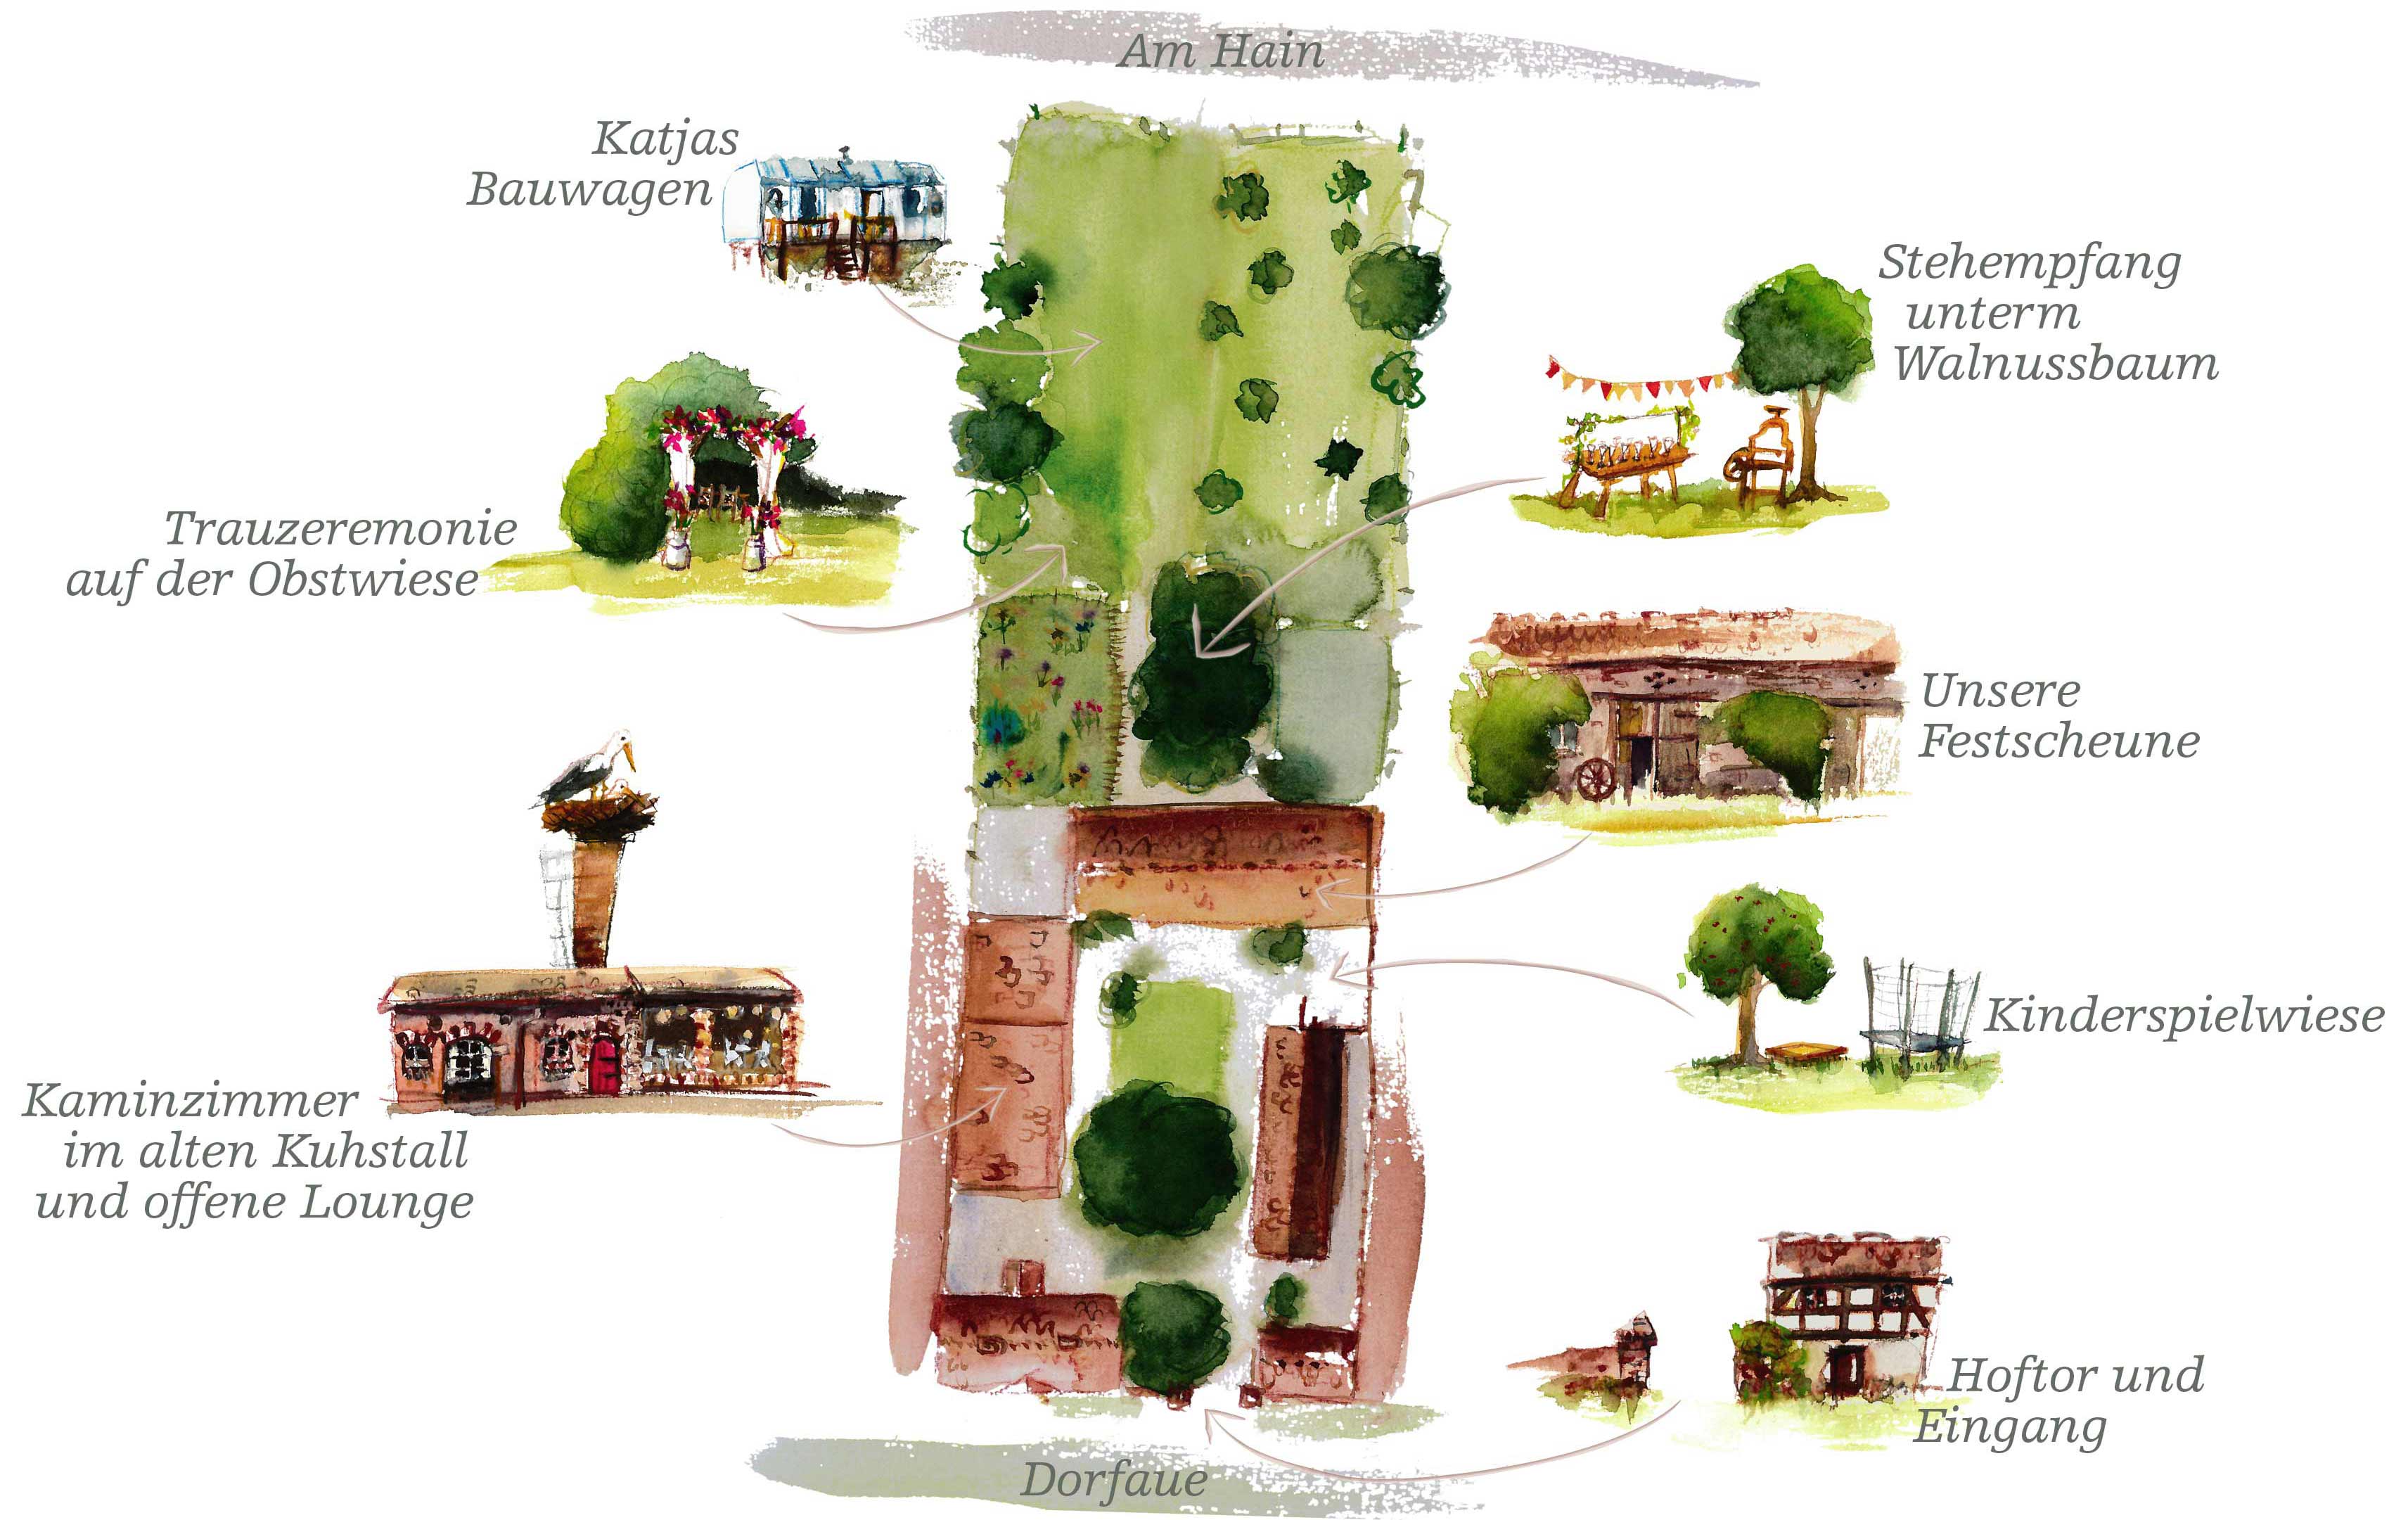 Lageplan des Vierseithofes mit Festscheune, Kaminzimmer und Garten